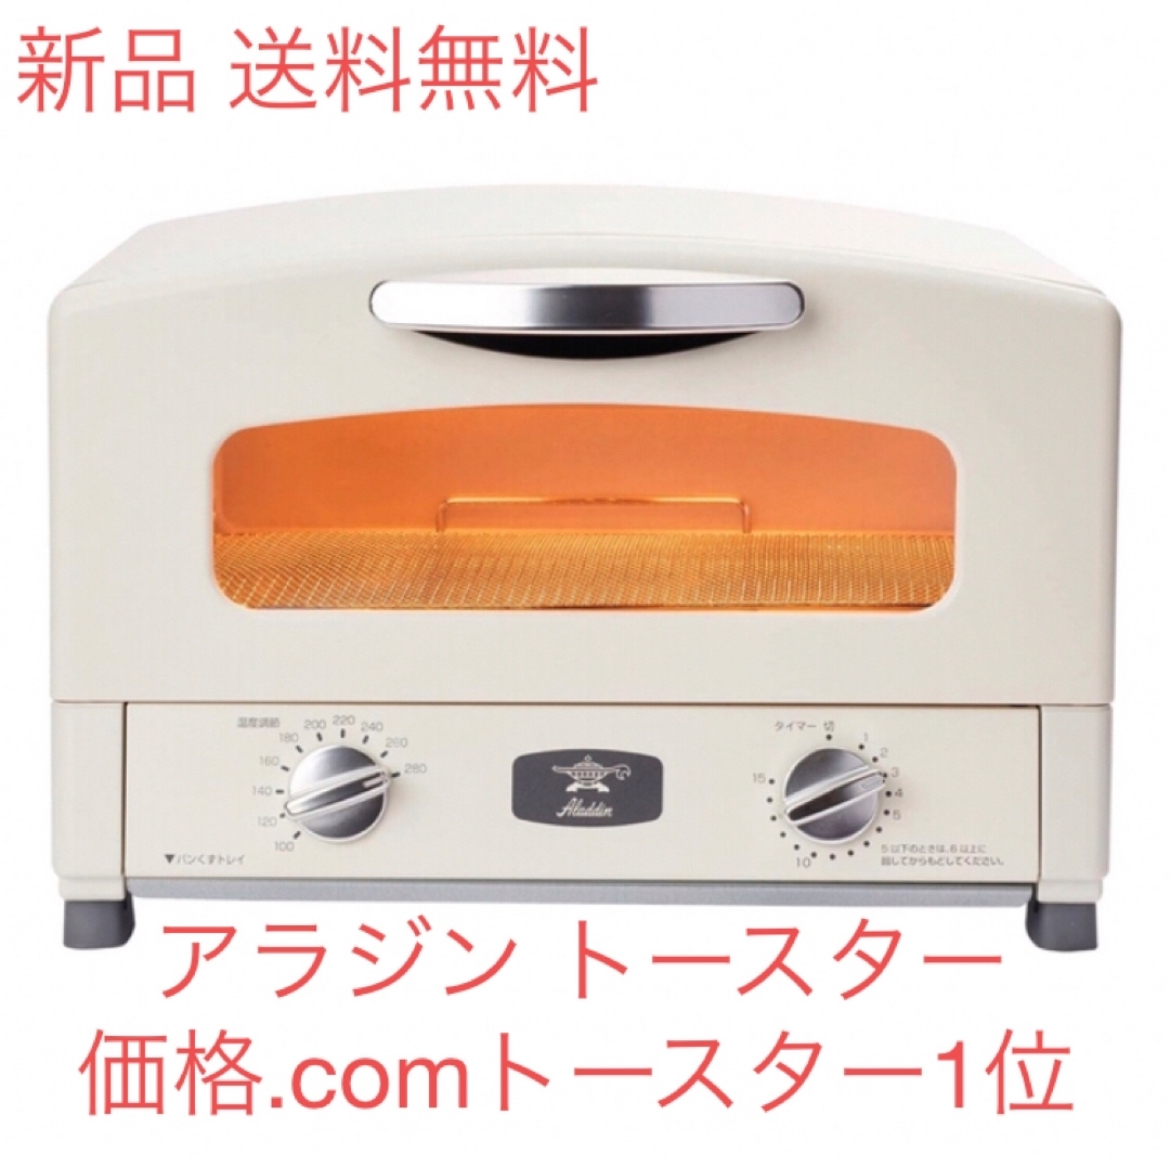 【新品】Aladdin グラファイト トースター 2枚焼き ホワイト